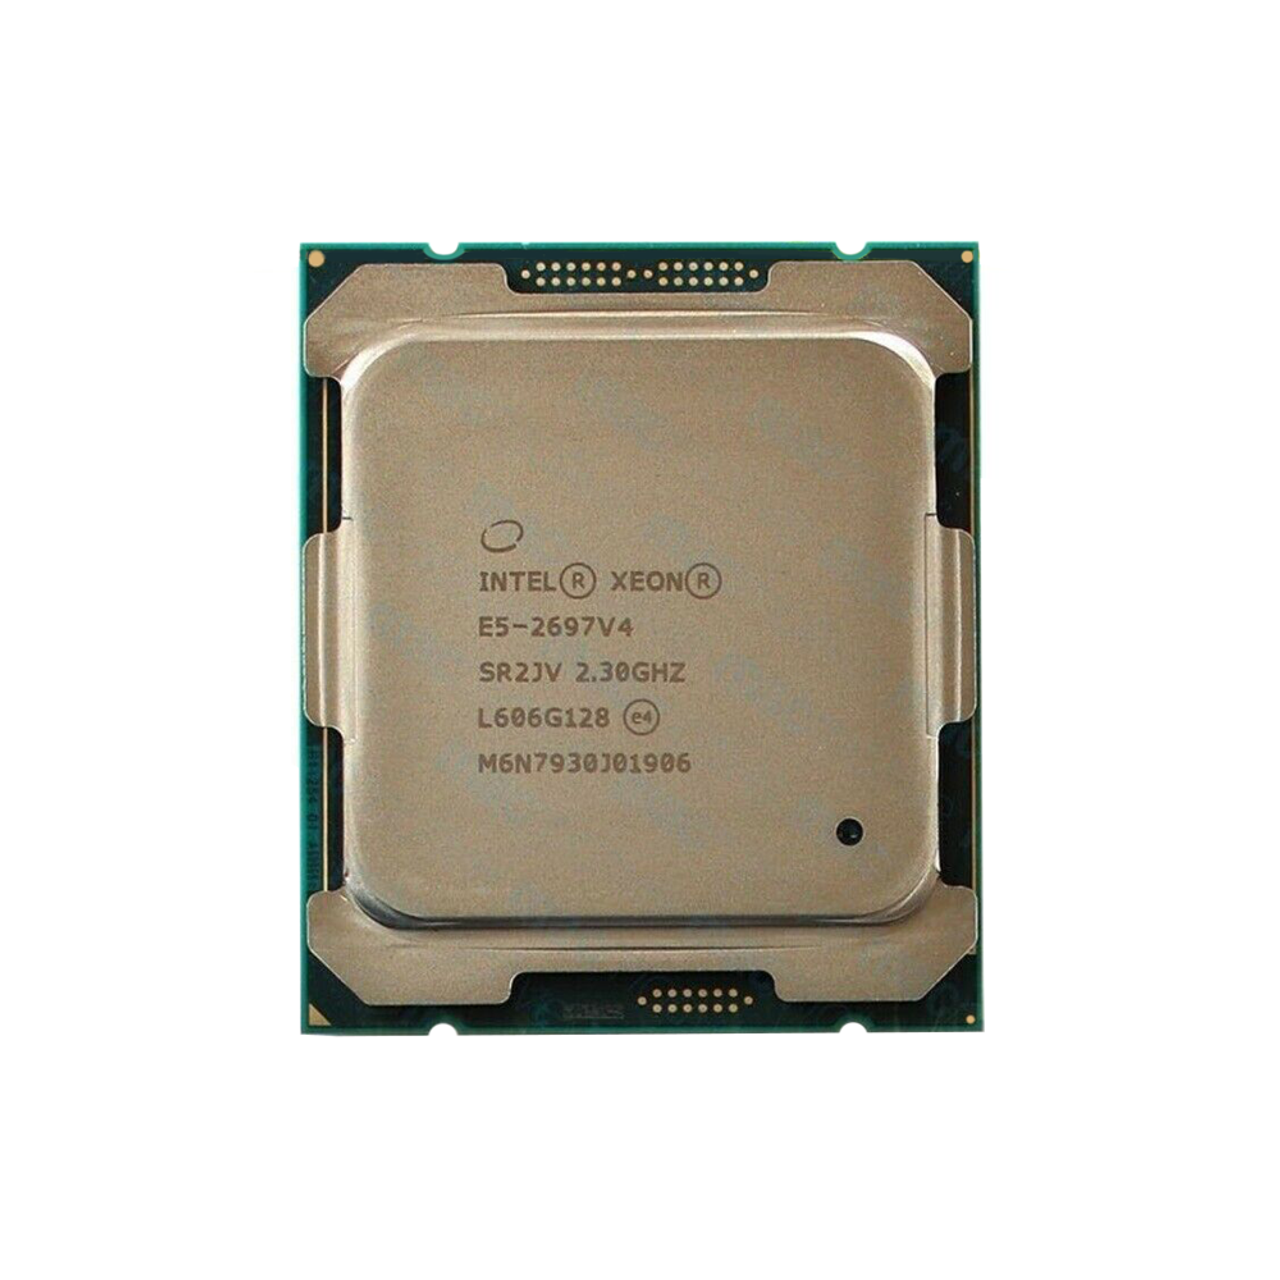 Intel - Intel Xeon E5-2697 V4 2.30 GHz 18C 2011-3 2400MHz 45MB 145W - Used  (SR2JV)